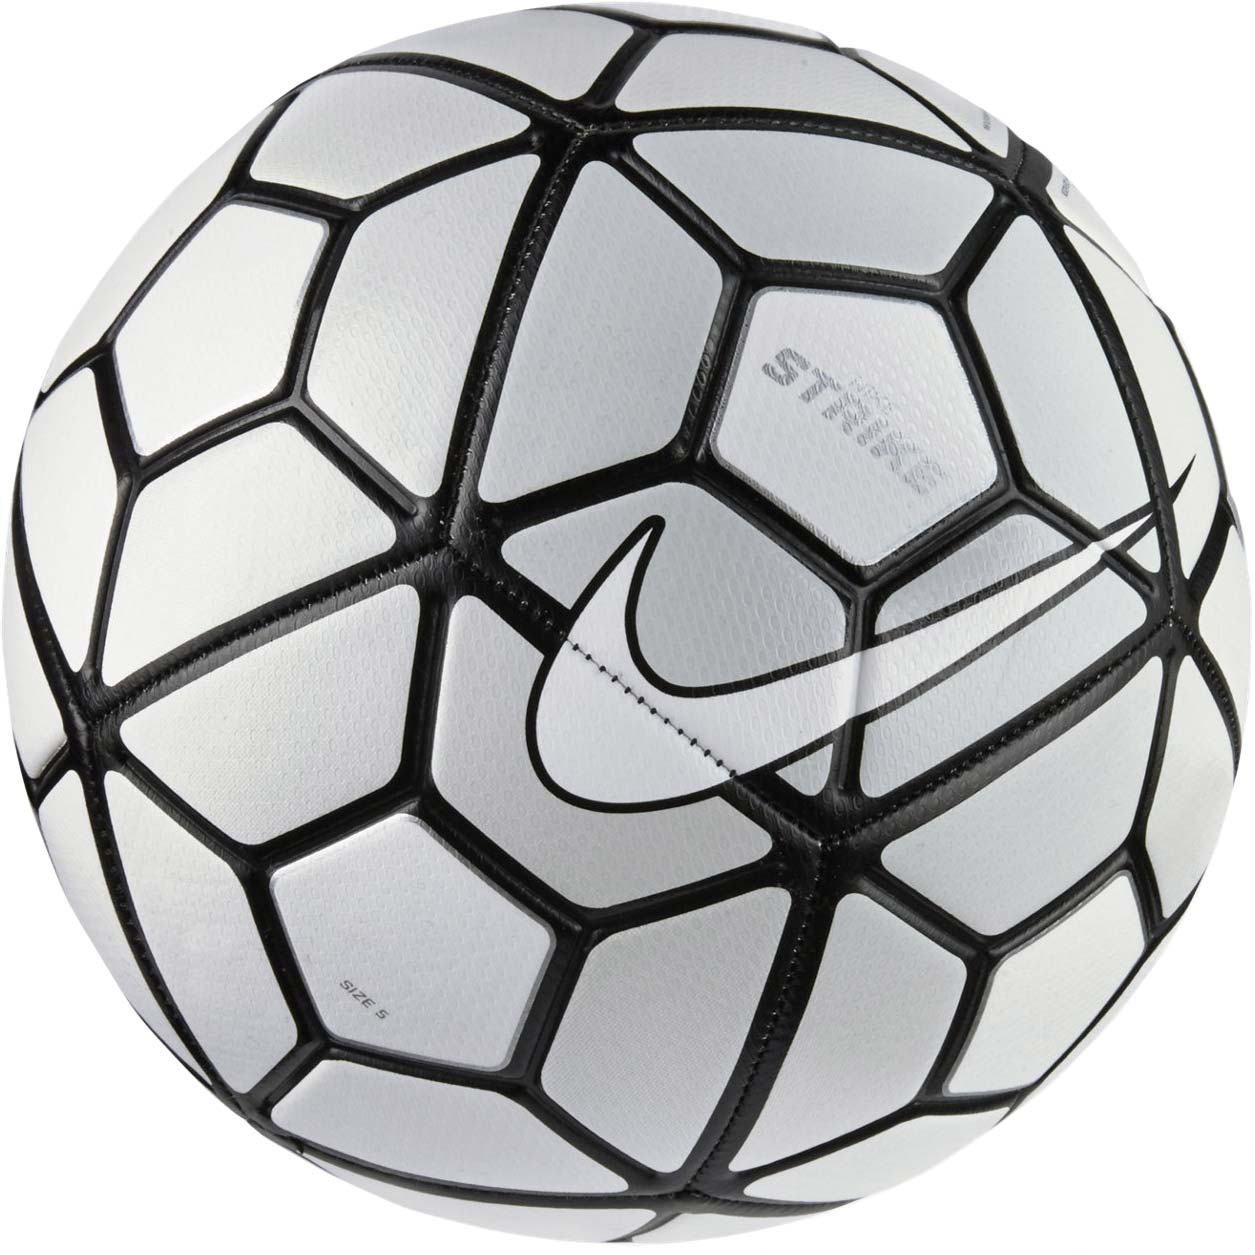 STRIKE - Fotbalový míč